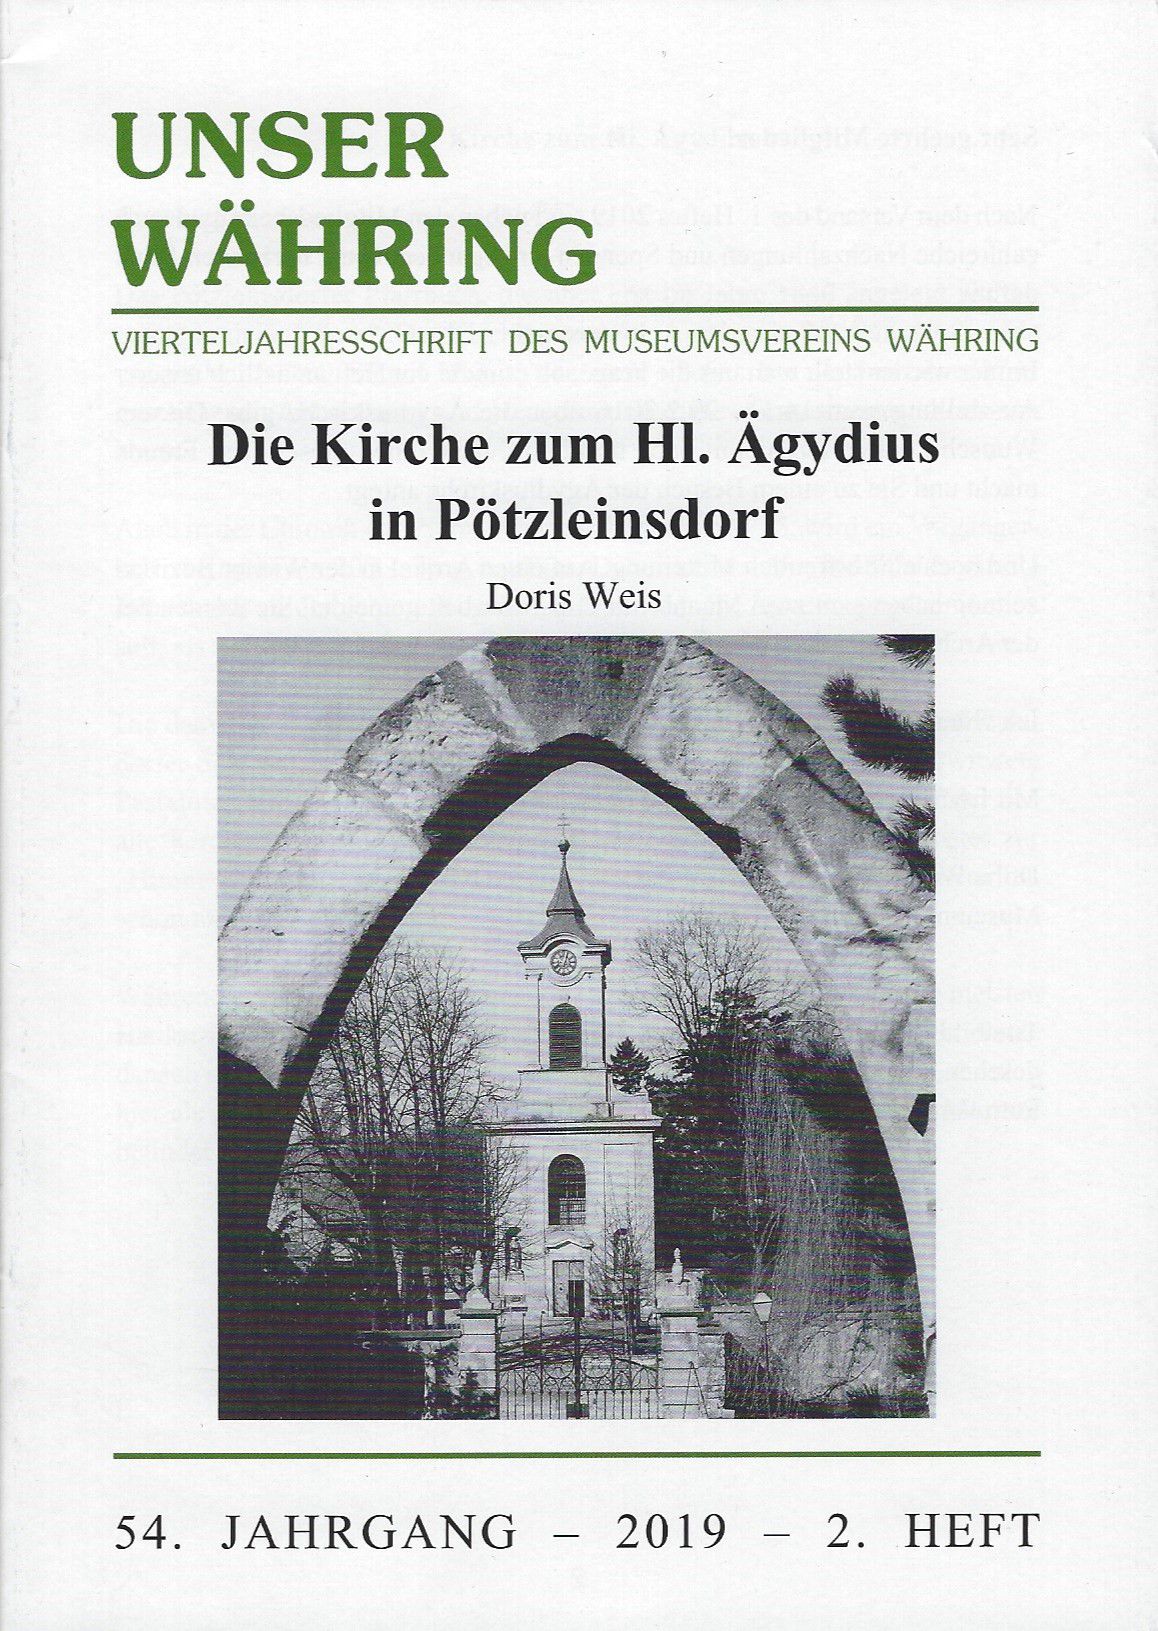 Publikation: Die Kirche zum Hl. Ägydius in Pötzleinsdorf. Bezirksmuseum Währing